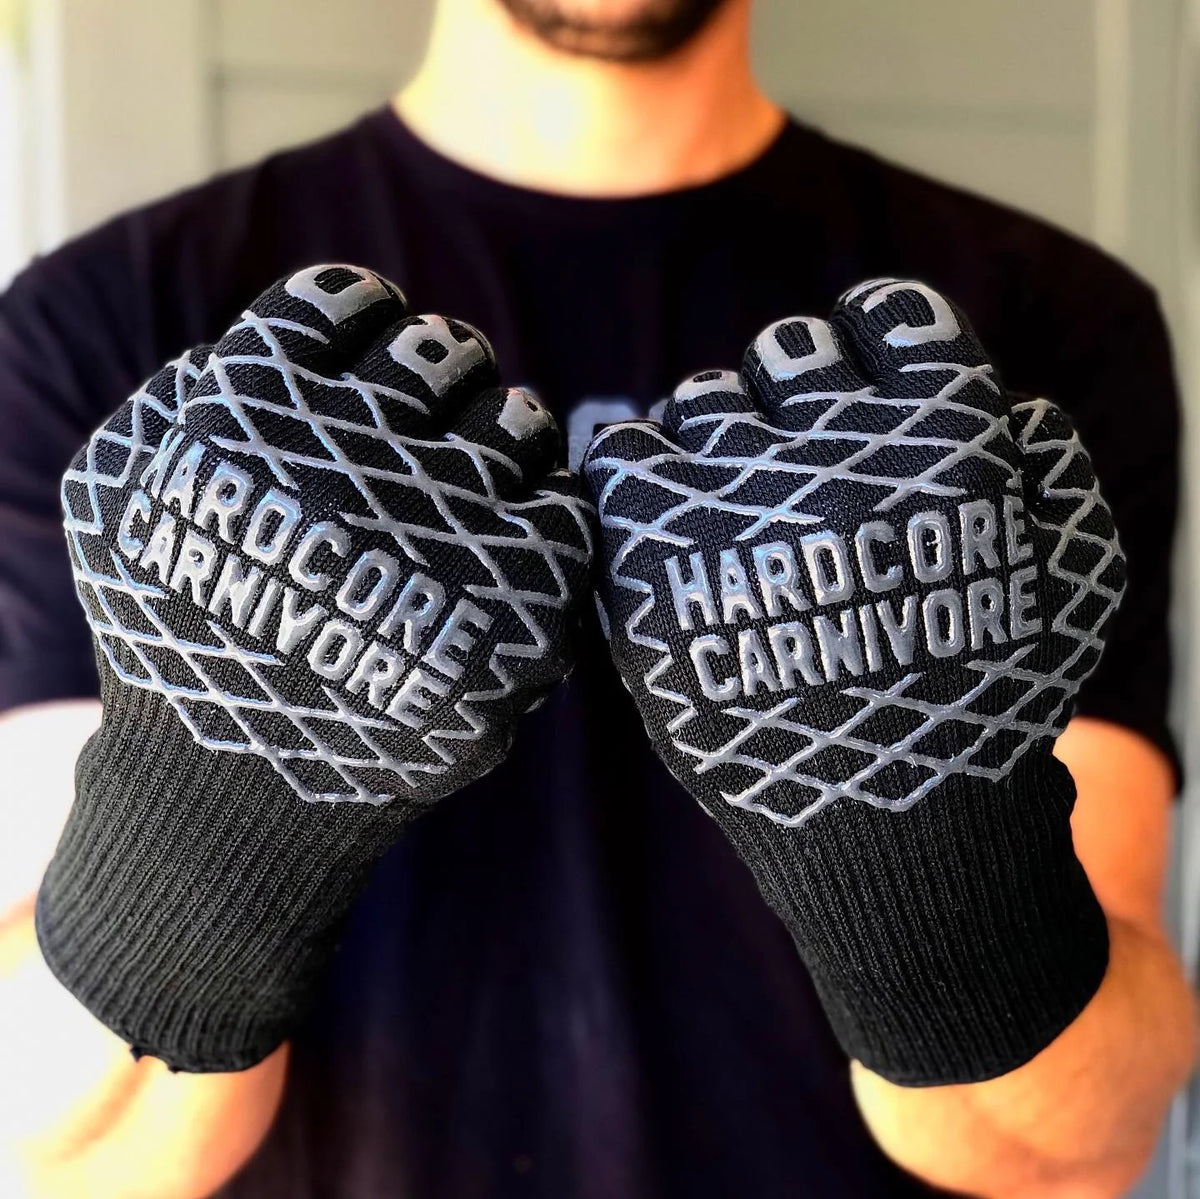 HARDCORE CARNIVOR Grilling Gloves